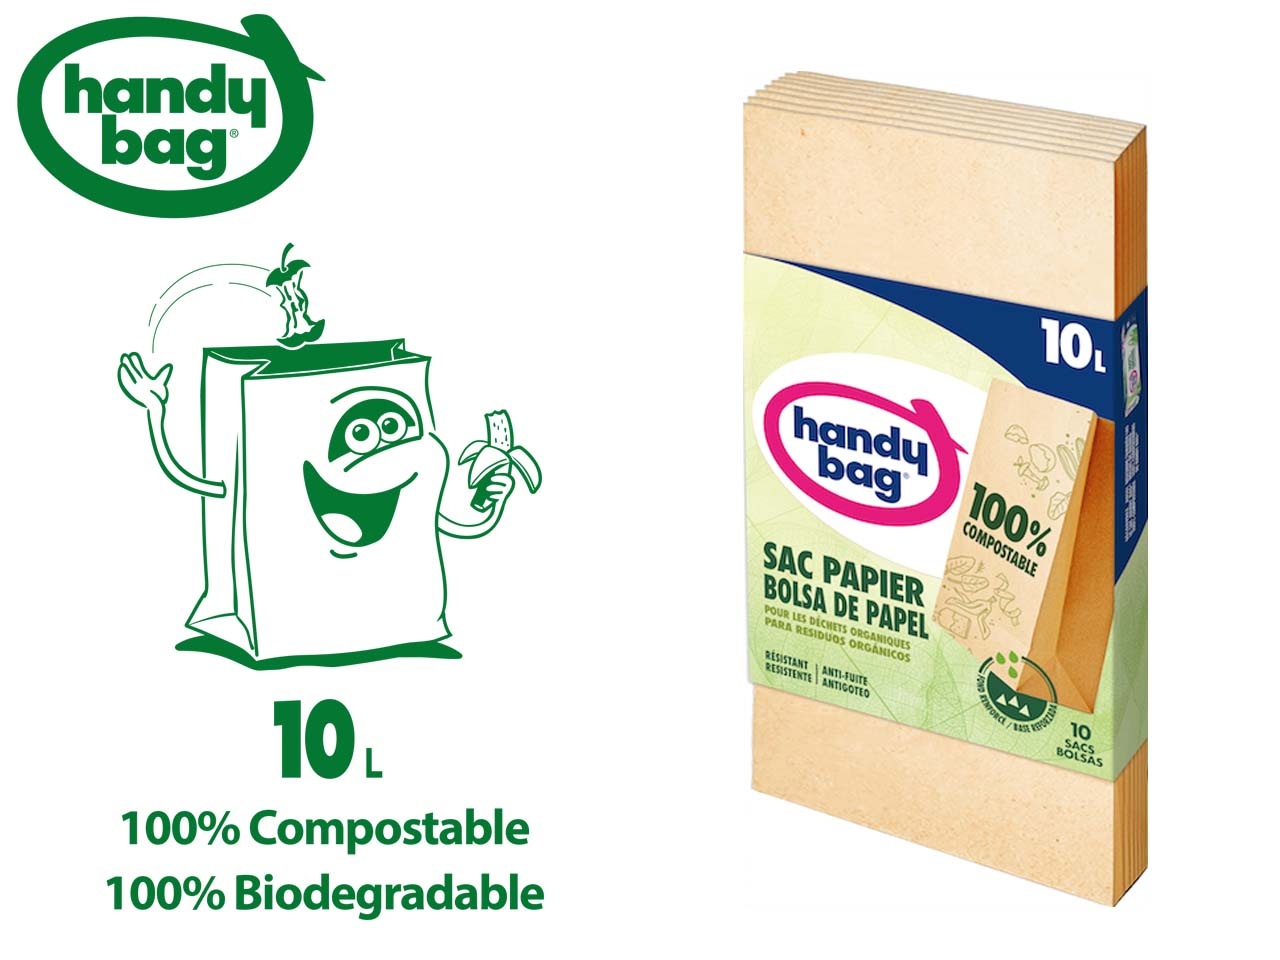 Handy Bag présente son sac poubelle 100% compostable et écologique en papier